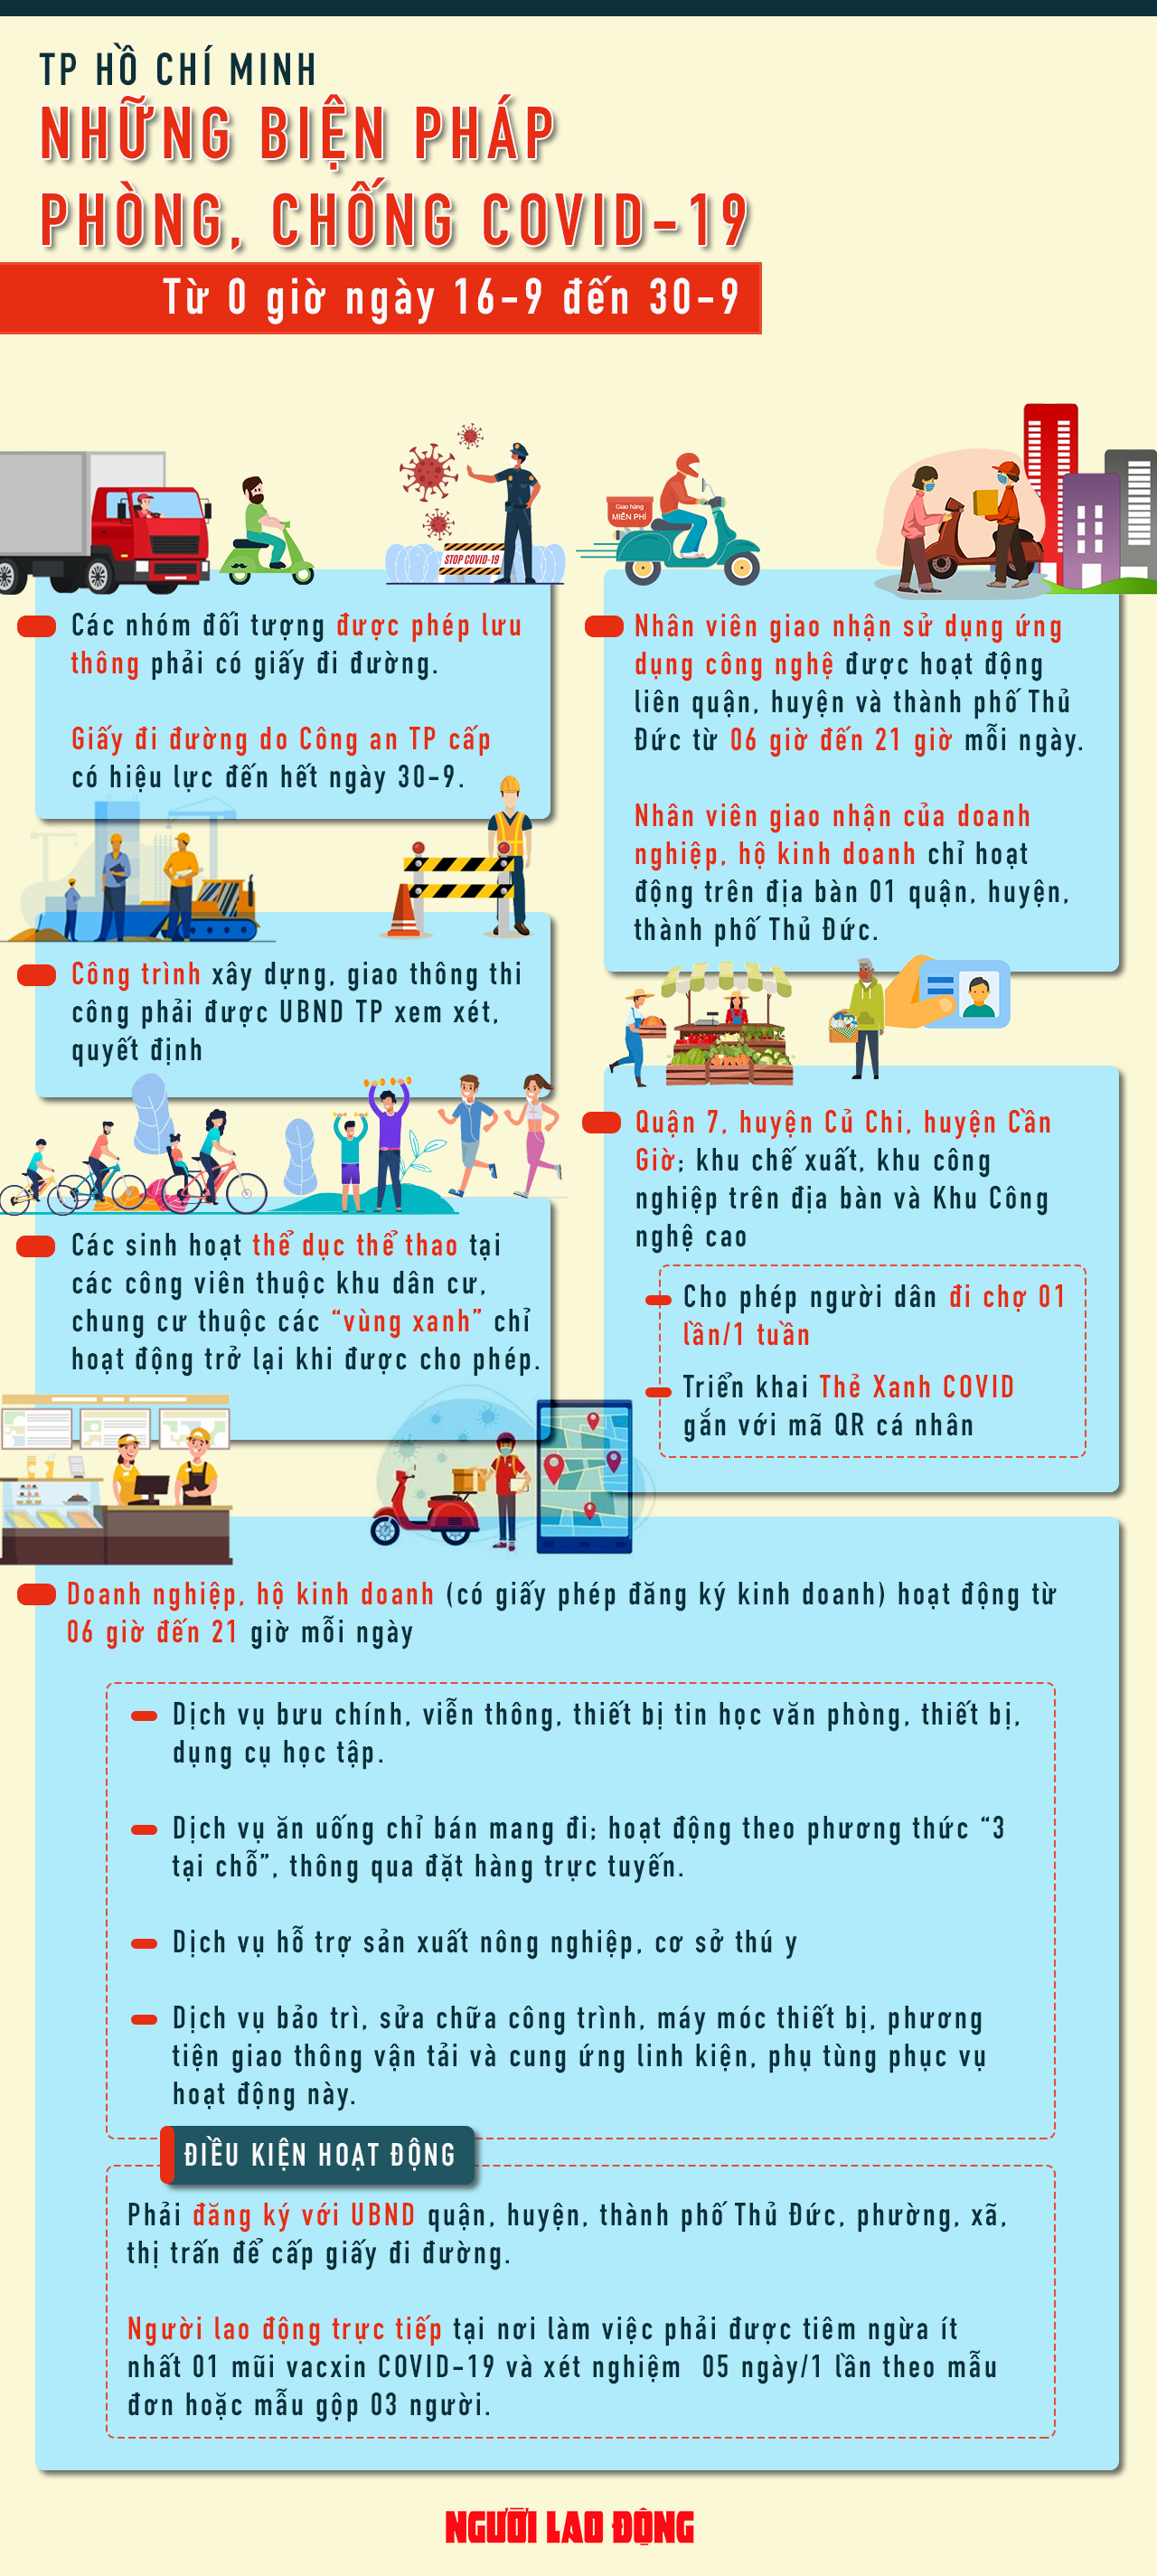 [Infographic] TP HCM: Những điều người dân cần biết sau ngày giãn cách 15-9 - Ảnh 1.